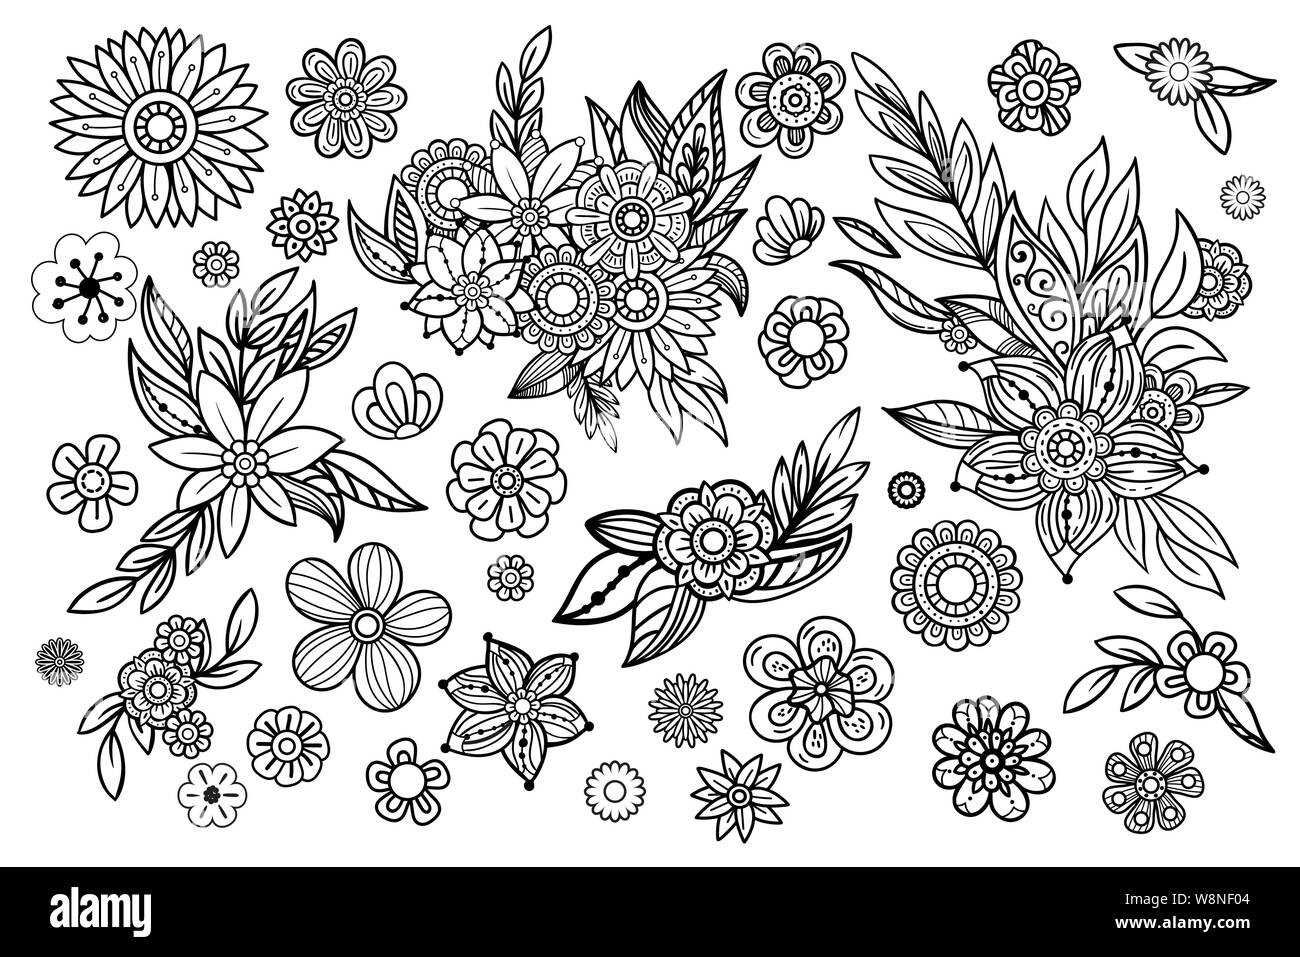 Dibujados a mano colección de hojas y flores. Conjunto de elementos de diseño floral. En blanco y negro estilo ilustración vectorial en garabatos. Aislado sobre fondo blanco. Ilustración del Vector